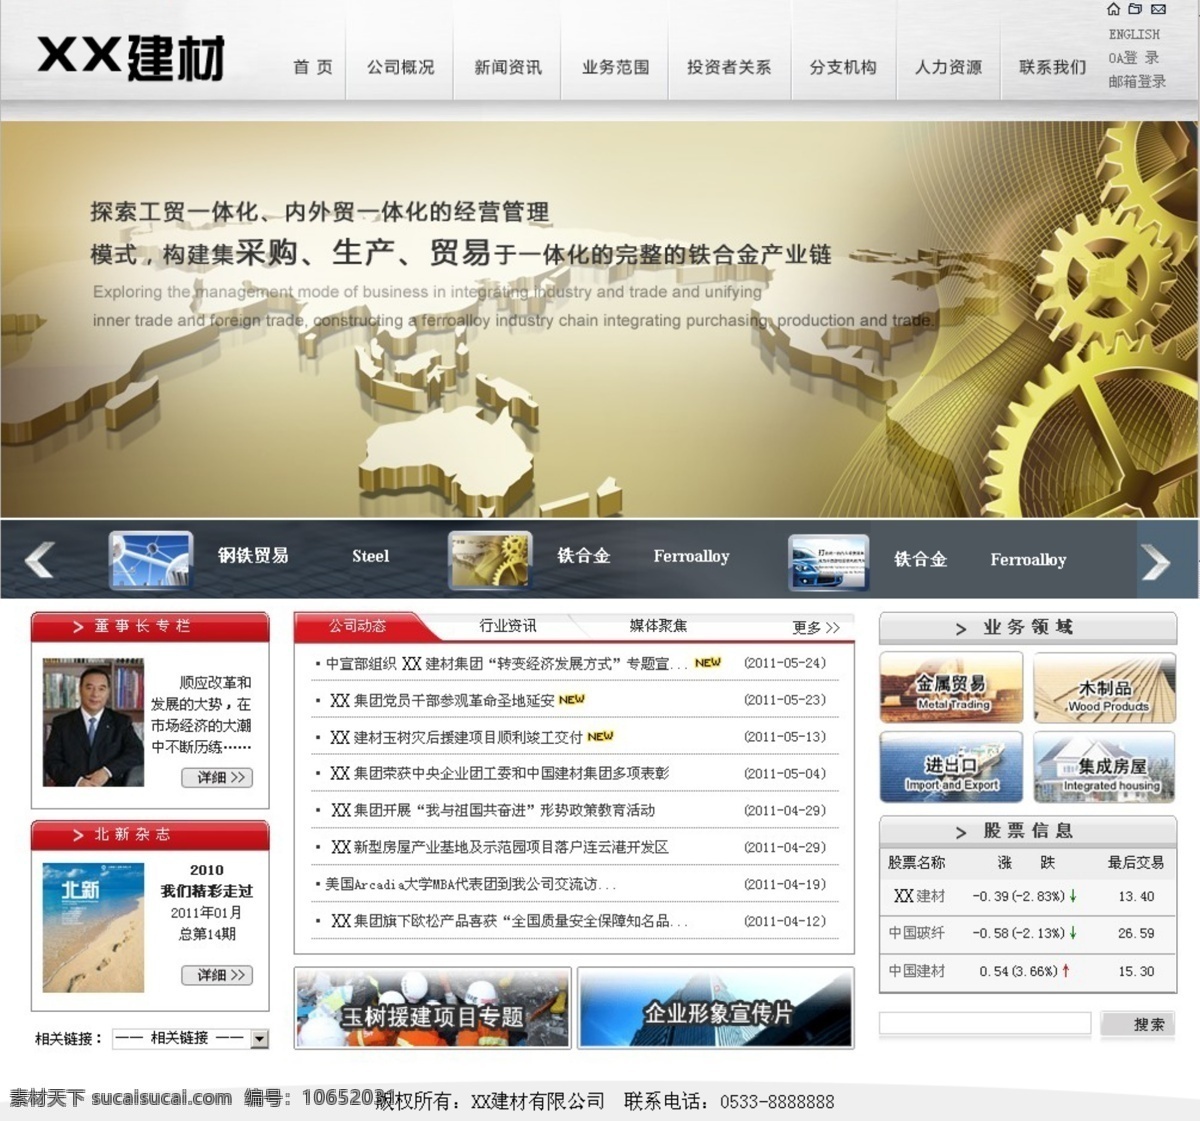 建材 网页模板 国际化 机械制造 源文件 中文模版 建材网页模板 化工行业 网页素材